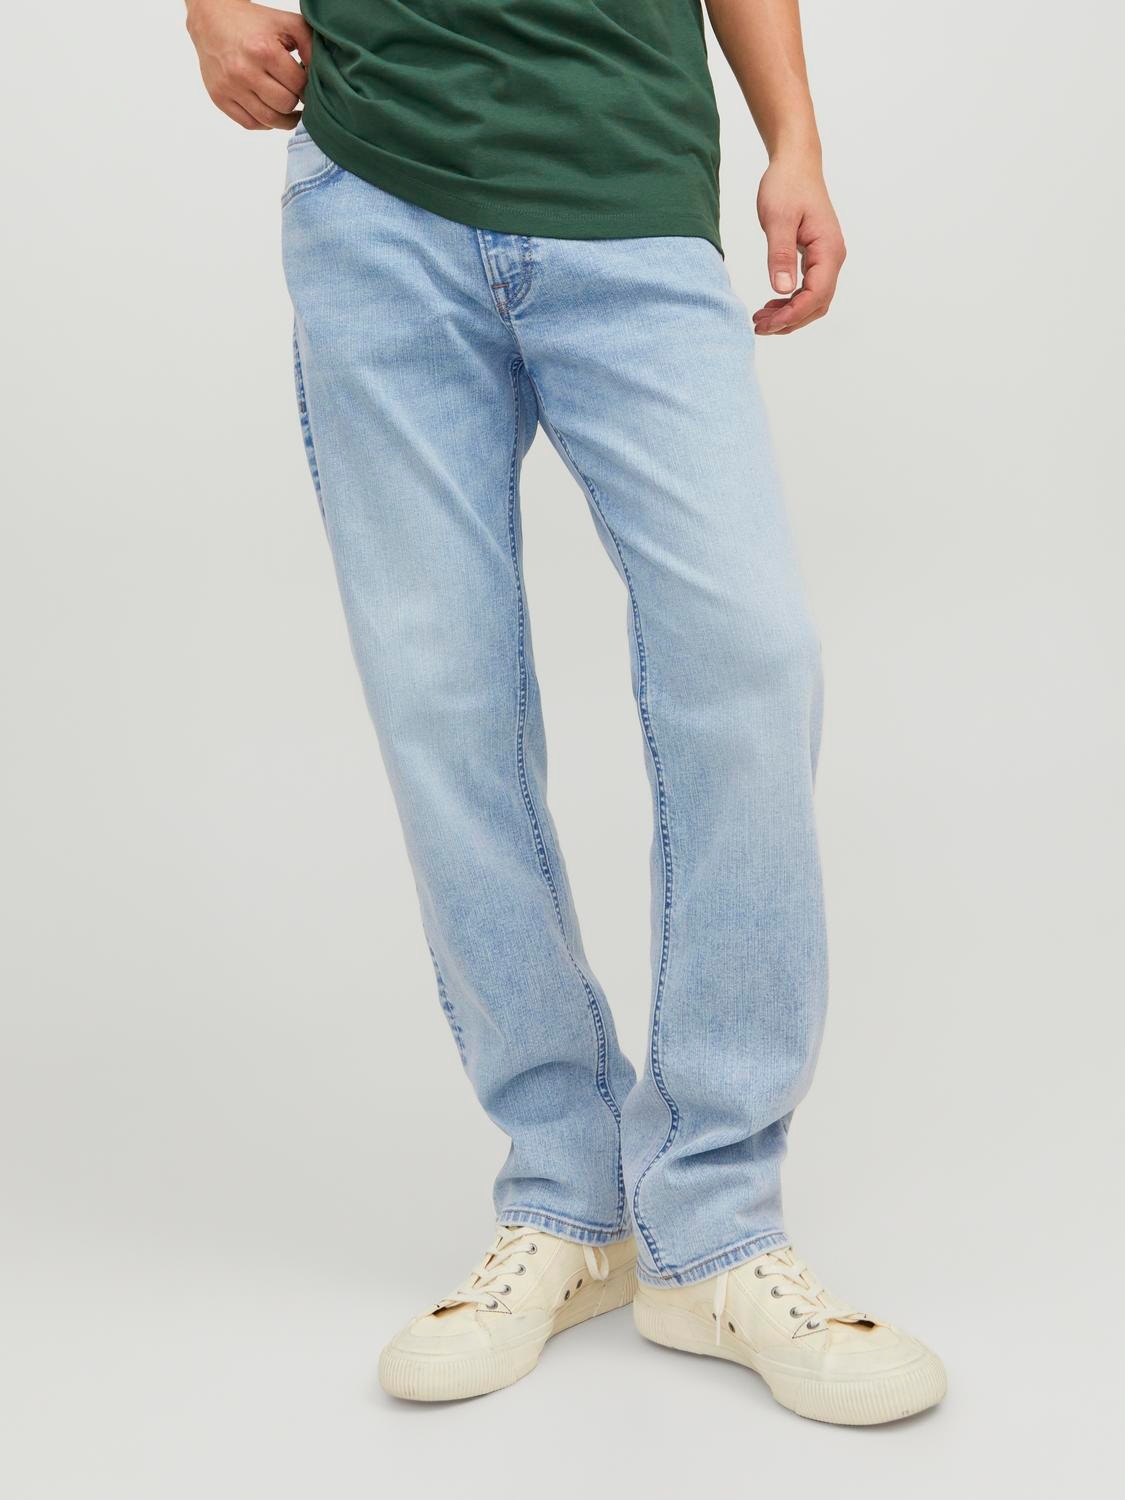 JJICLARK JJORIGINAL SBD 175 Jeans Regular Fit com 20% de desconto